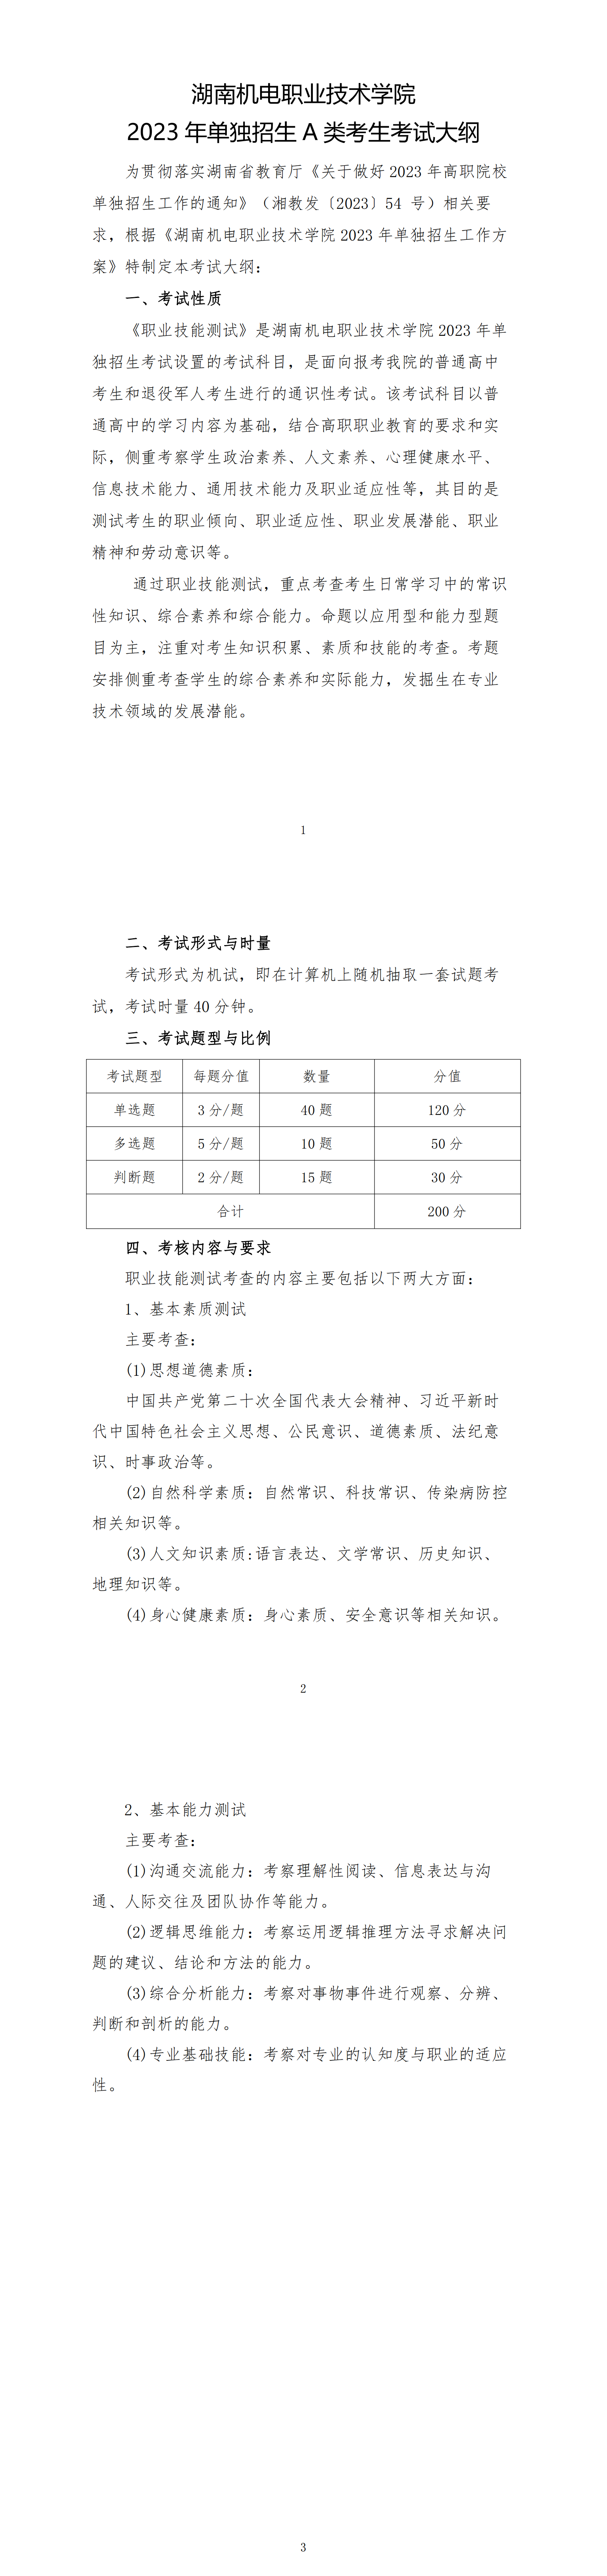 2023年湖南机电职业技术学院单招A类考生考试大纲